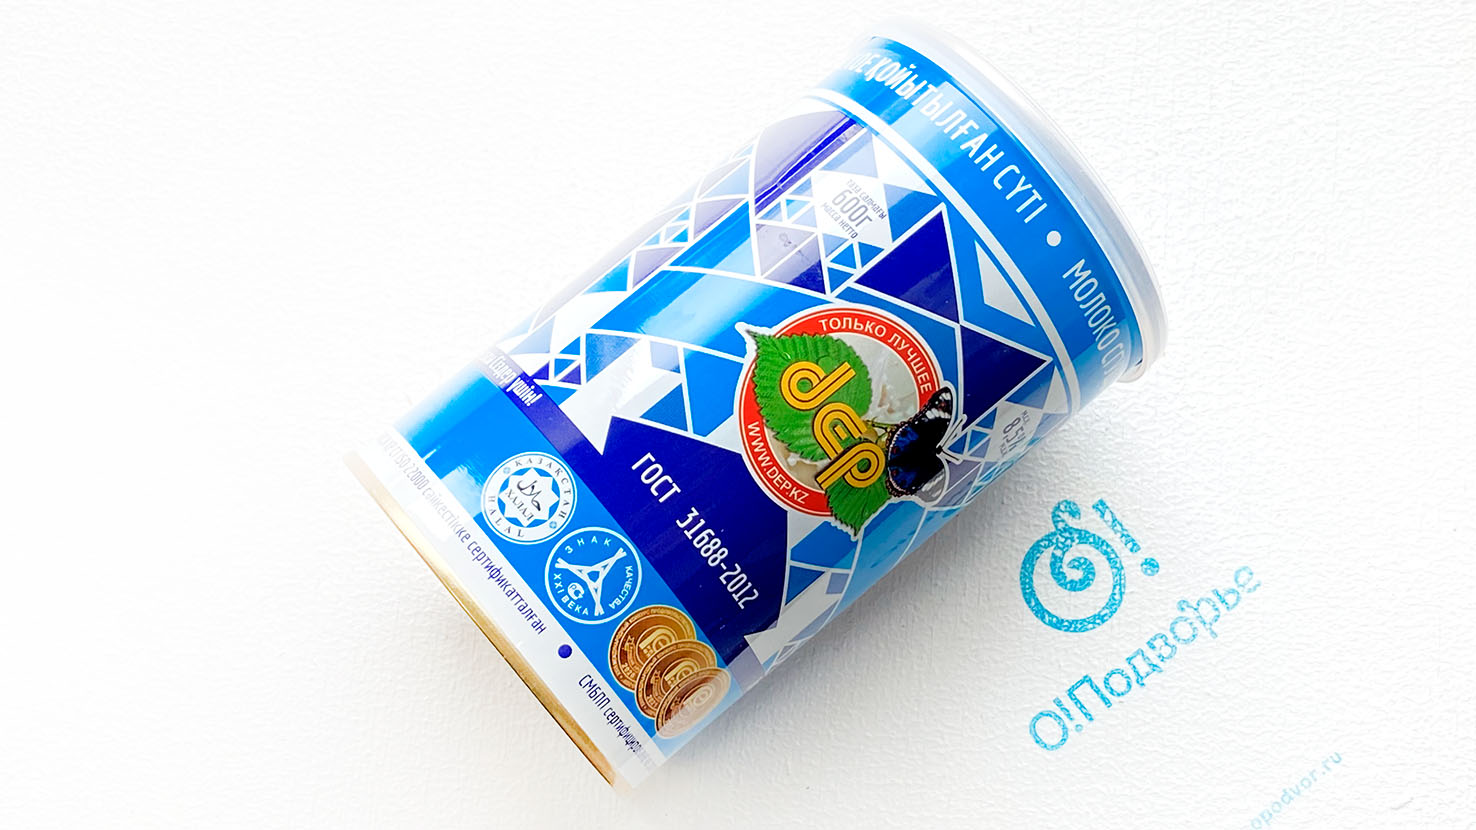 Сгущённое молоко, "dep", Казахстан, 600 грамм